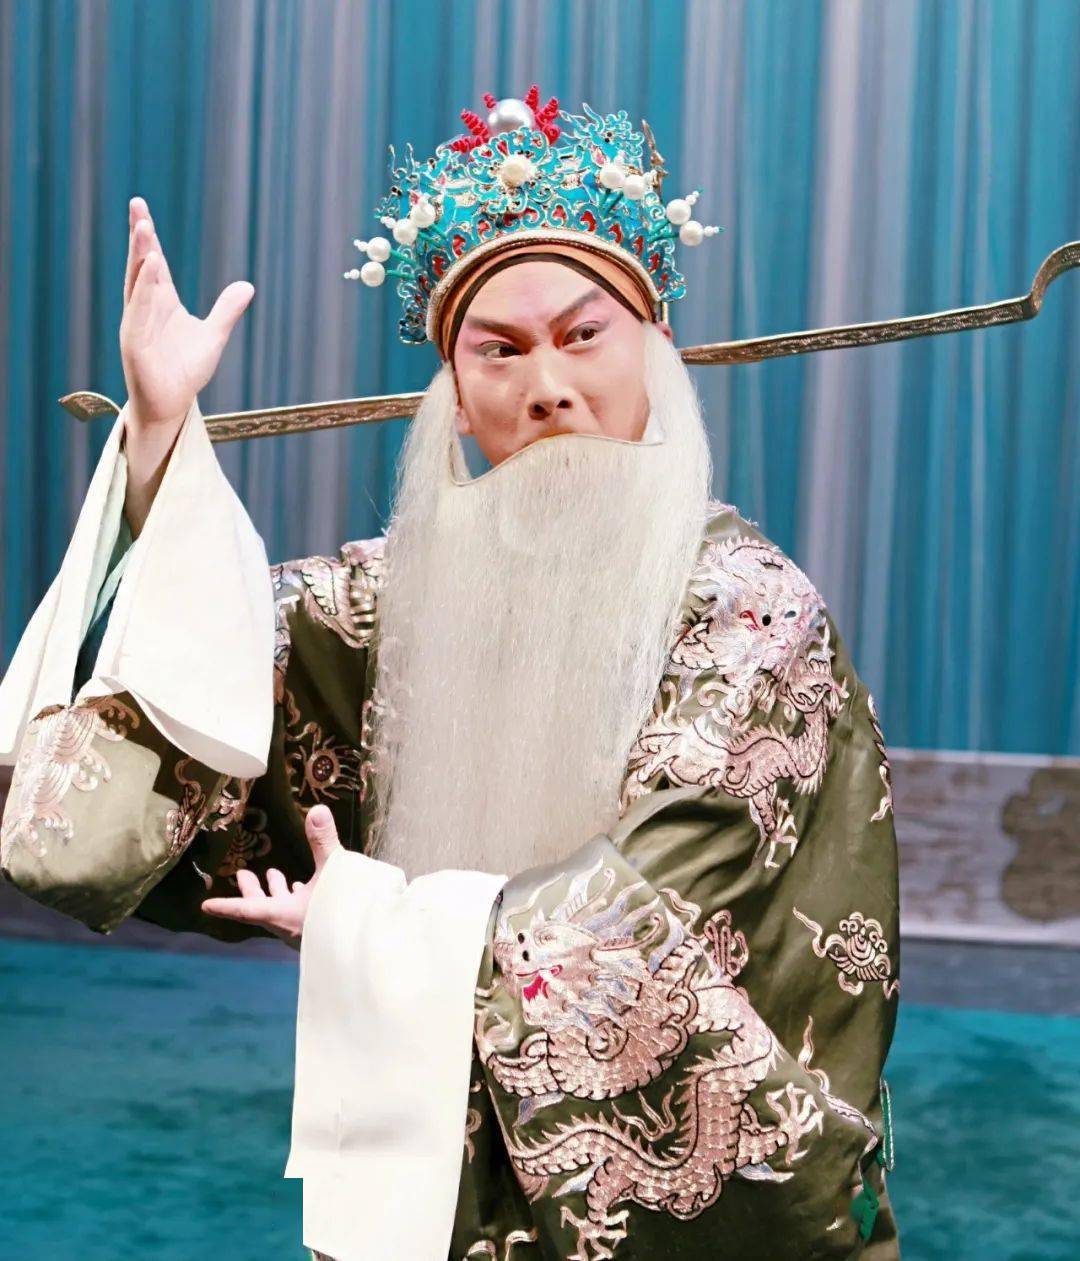 同样是一出历史悠久的传统京剧,最初剧中的主角是刘备,乔玄本是个末行